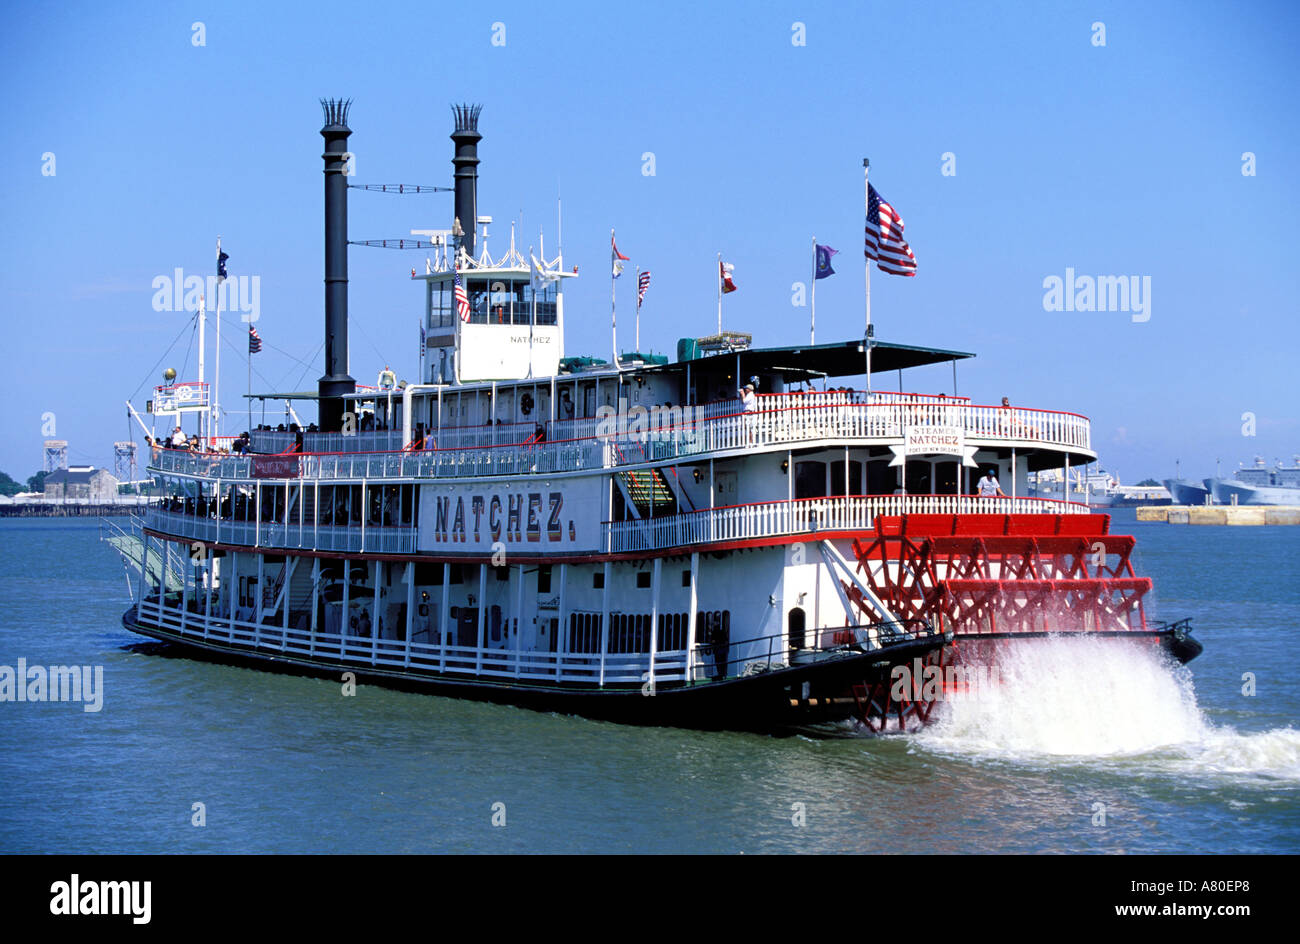 Etats-unis, Louisiane, Nouvelle Orléans city, le bateau à aubes sur le fleuve Mississippi Natchez Banque D'Images